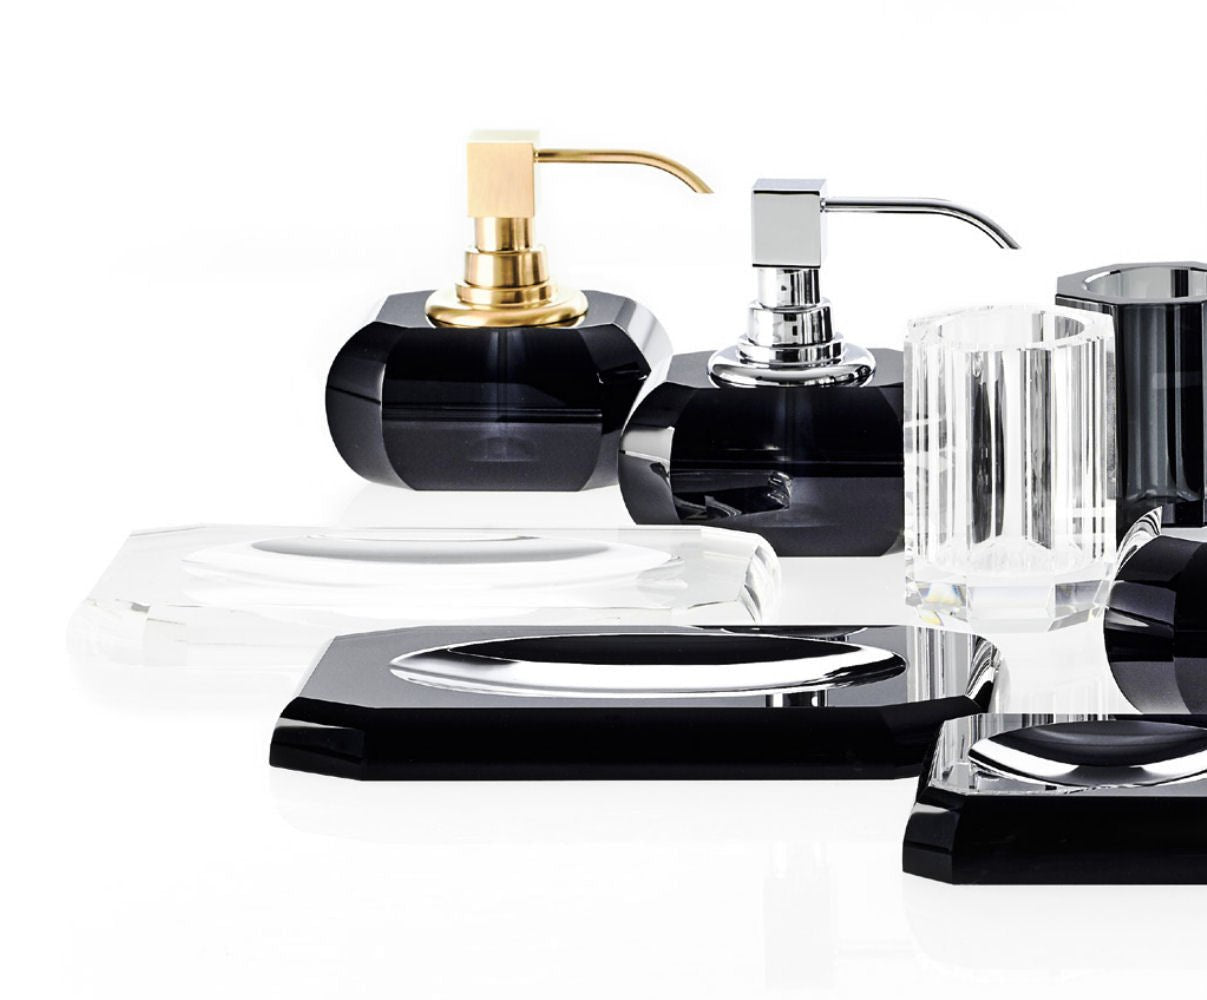 Luxury Black Matt Crystal Glass Liquid Soap Dispenser | Anthracite - |VESIMI Design| Luxury Bathrooms & Deco